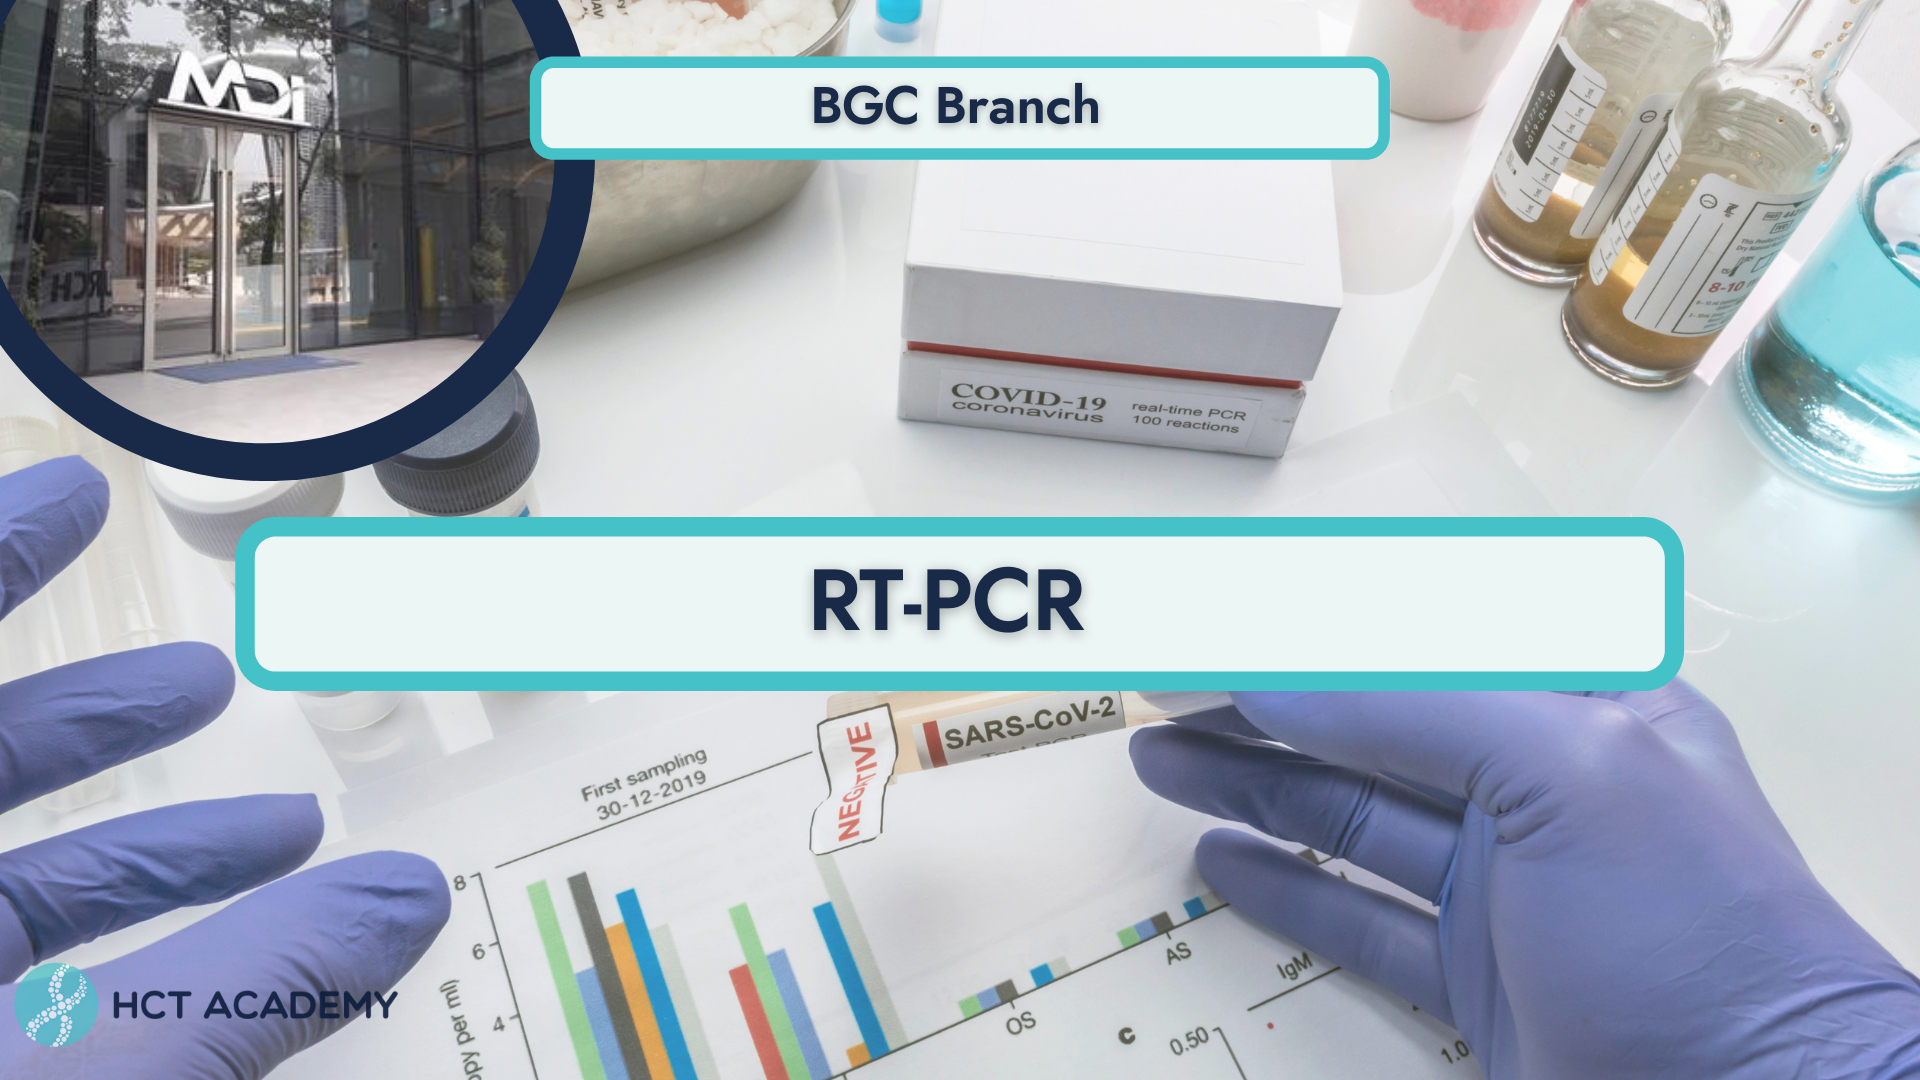 RT-PCR TEST | Uptown BGC Branch